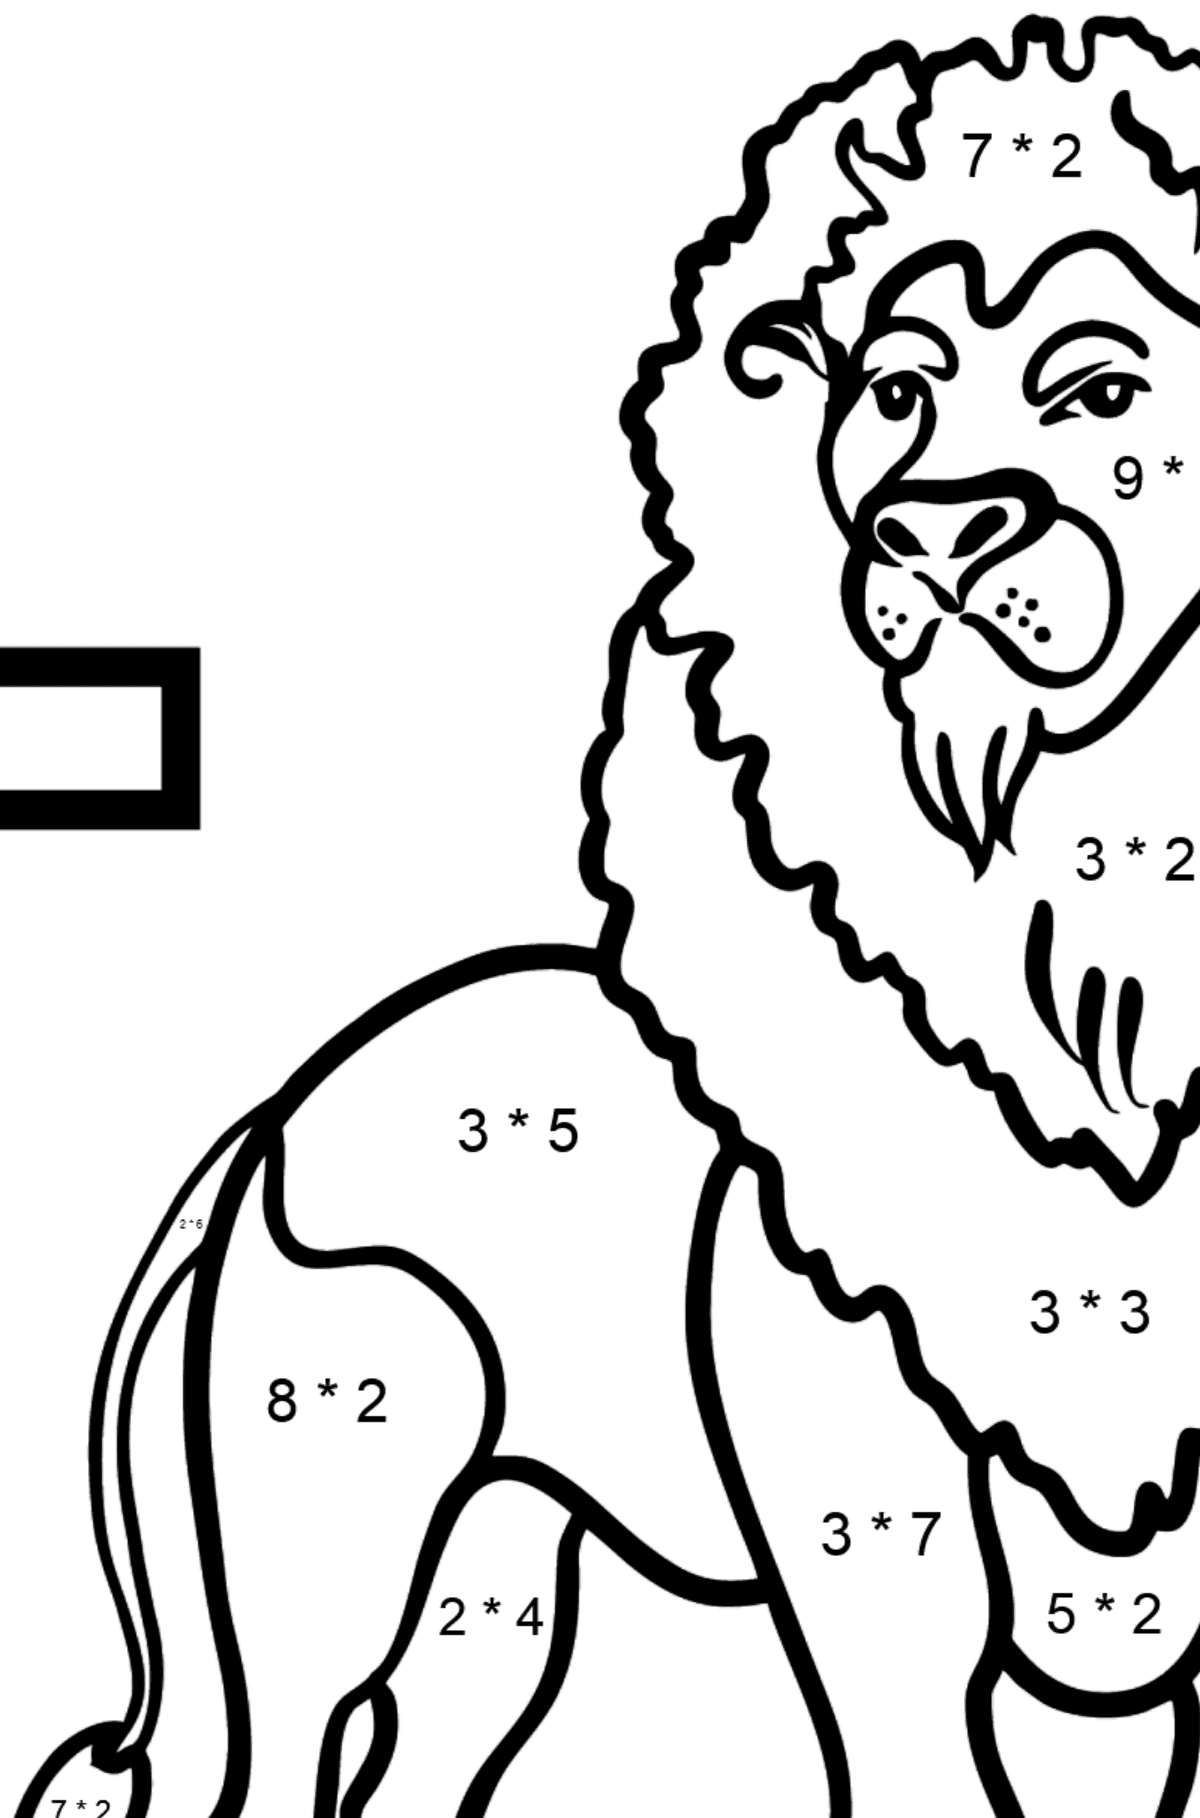 Dibujo de Letra L inglesa para colorear - LION - Colorear con Matemáticas - Multiplicaciones para Niños